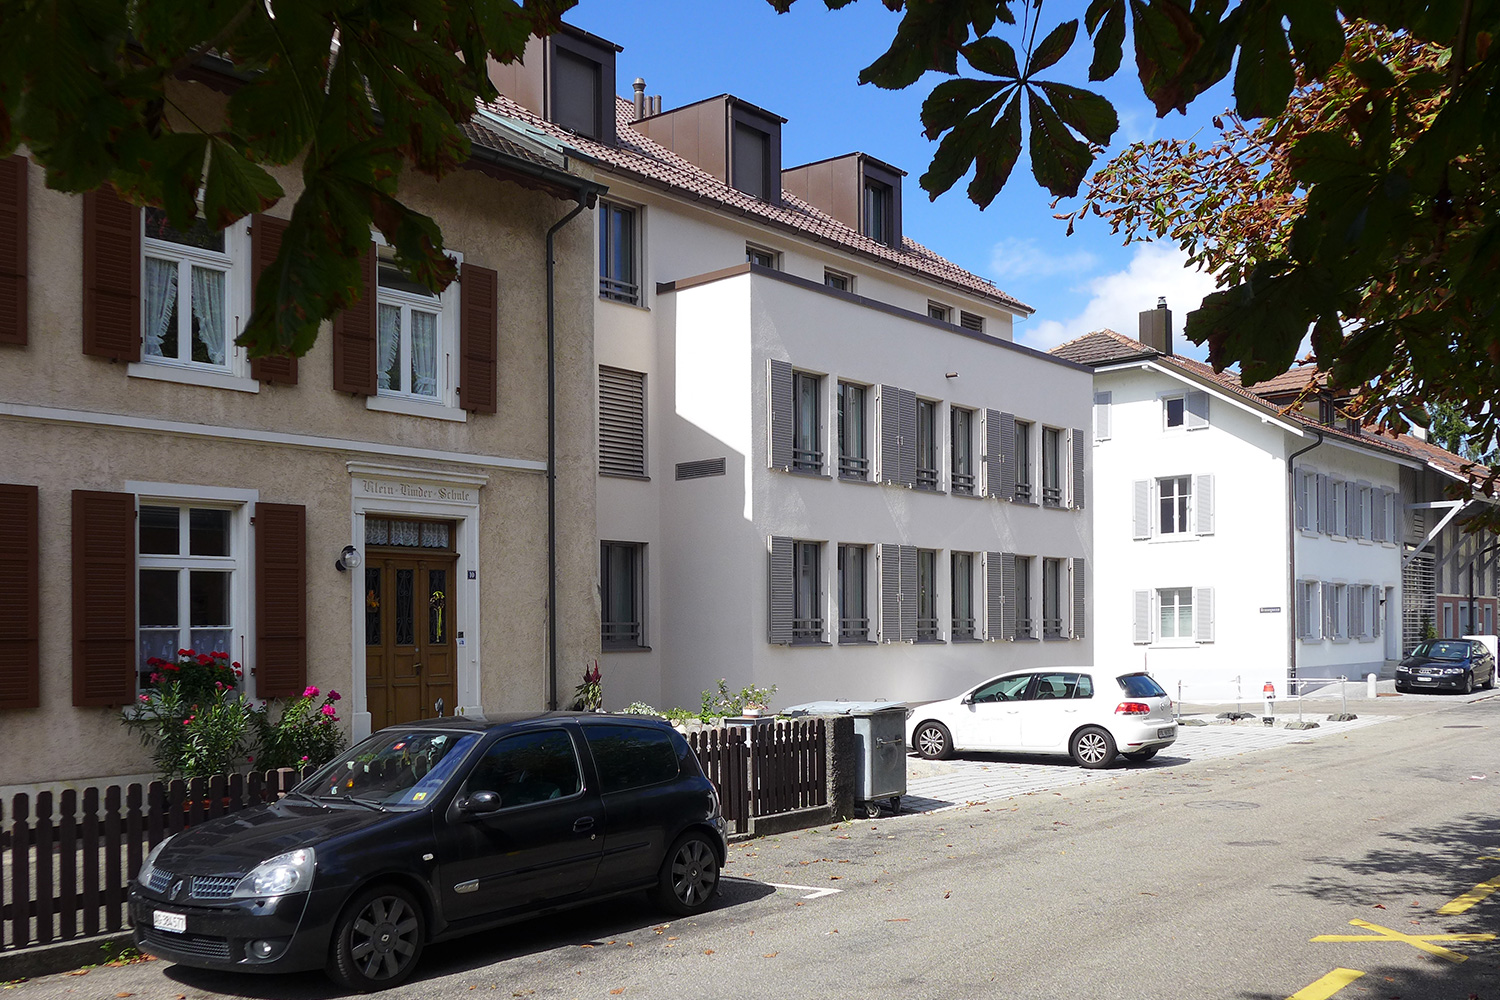 Mehrfamilienhaus Münchenstein, Baselland 2015